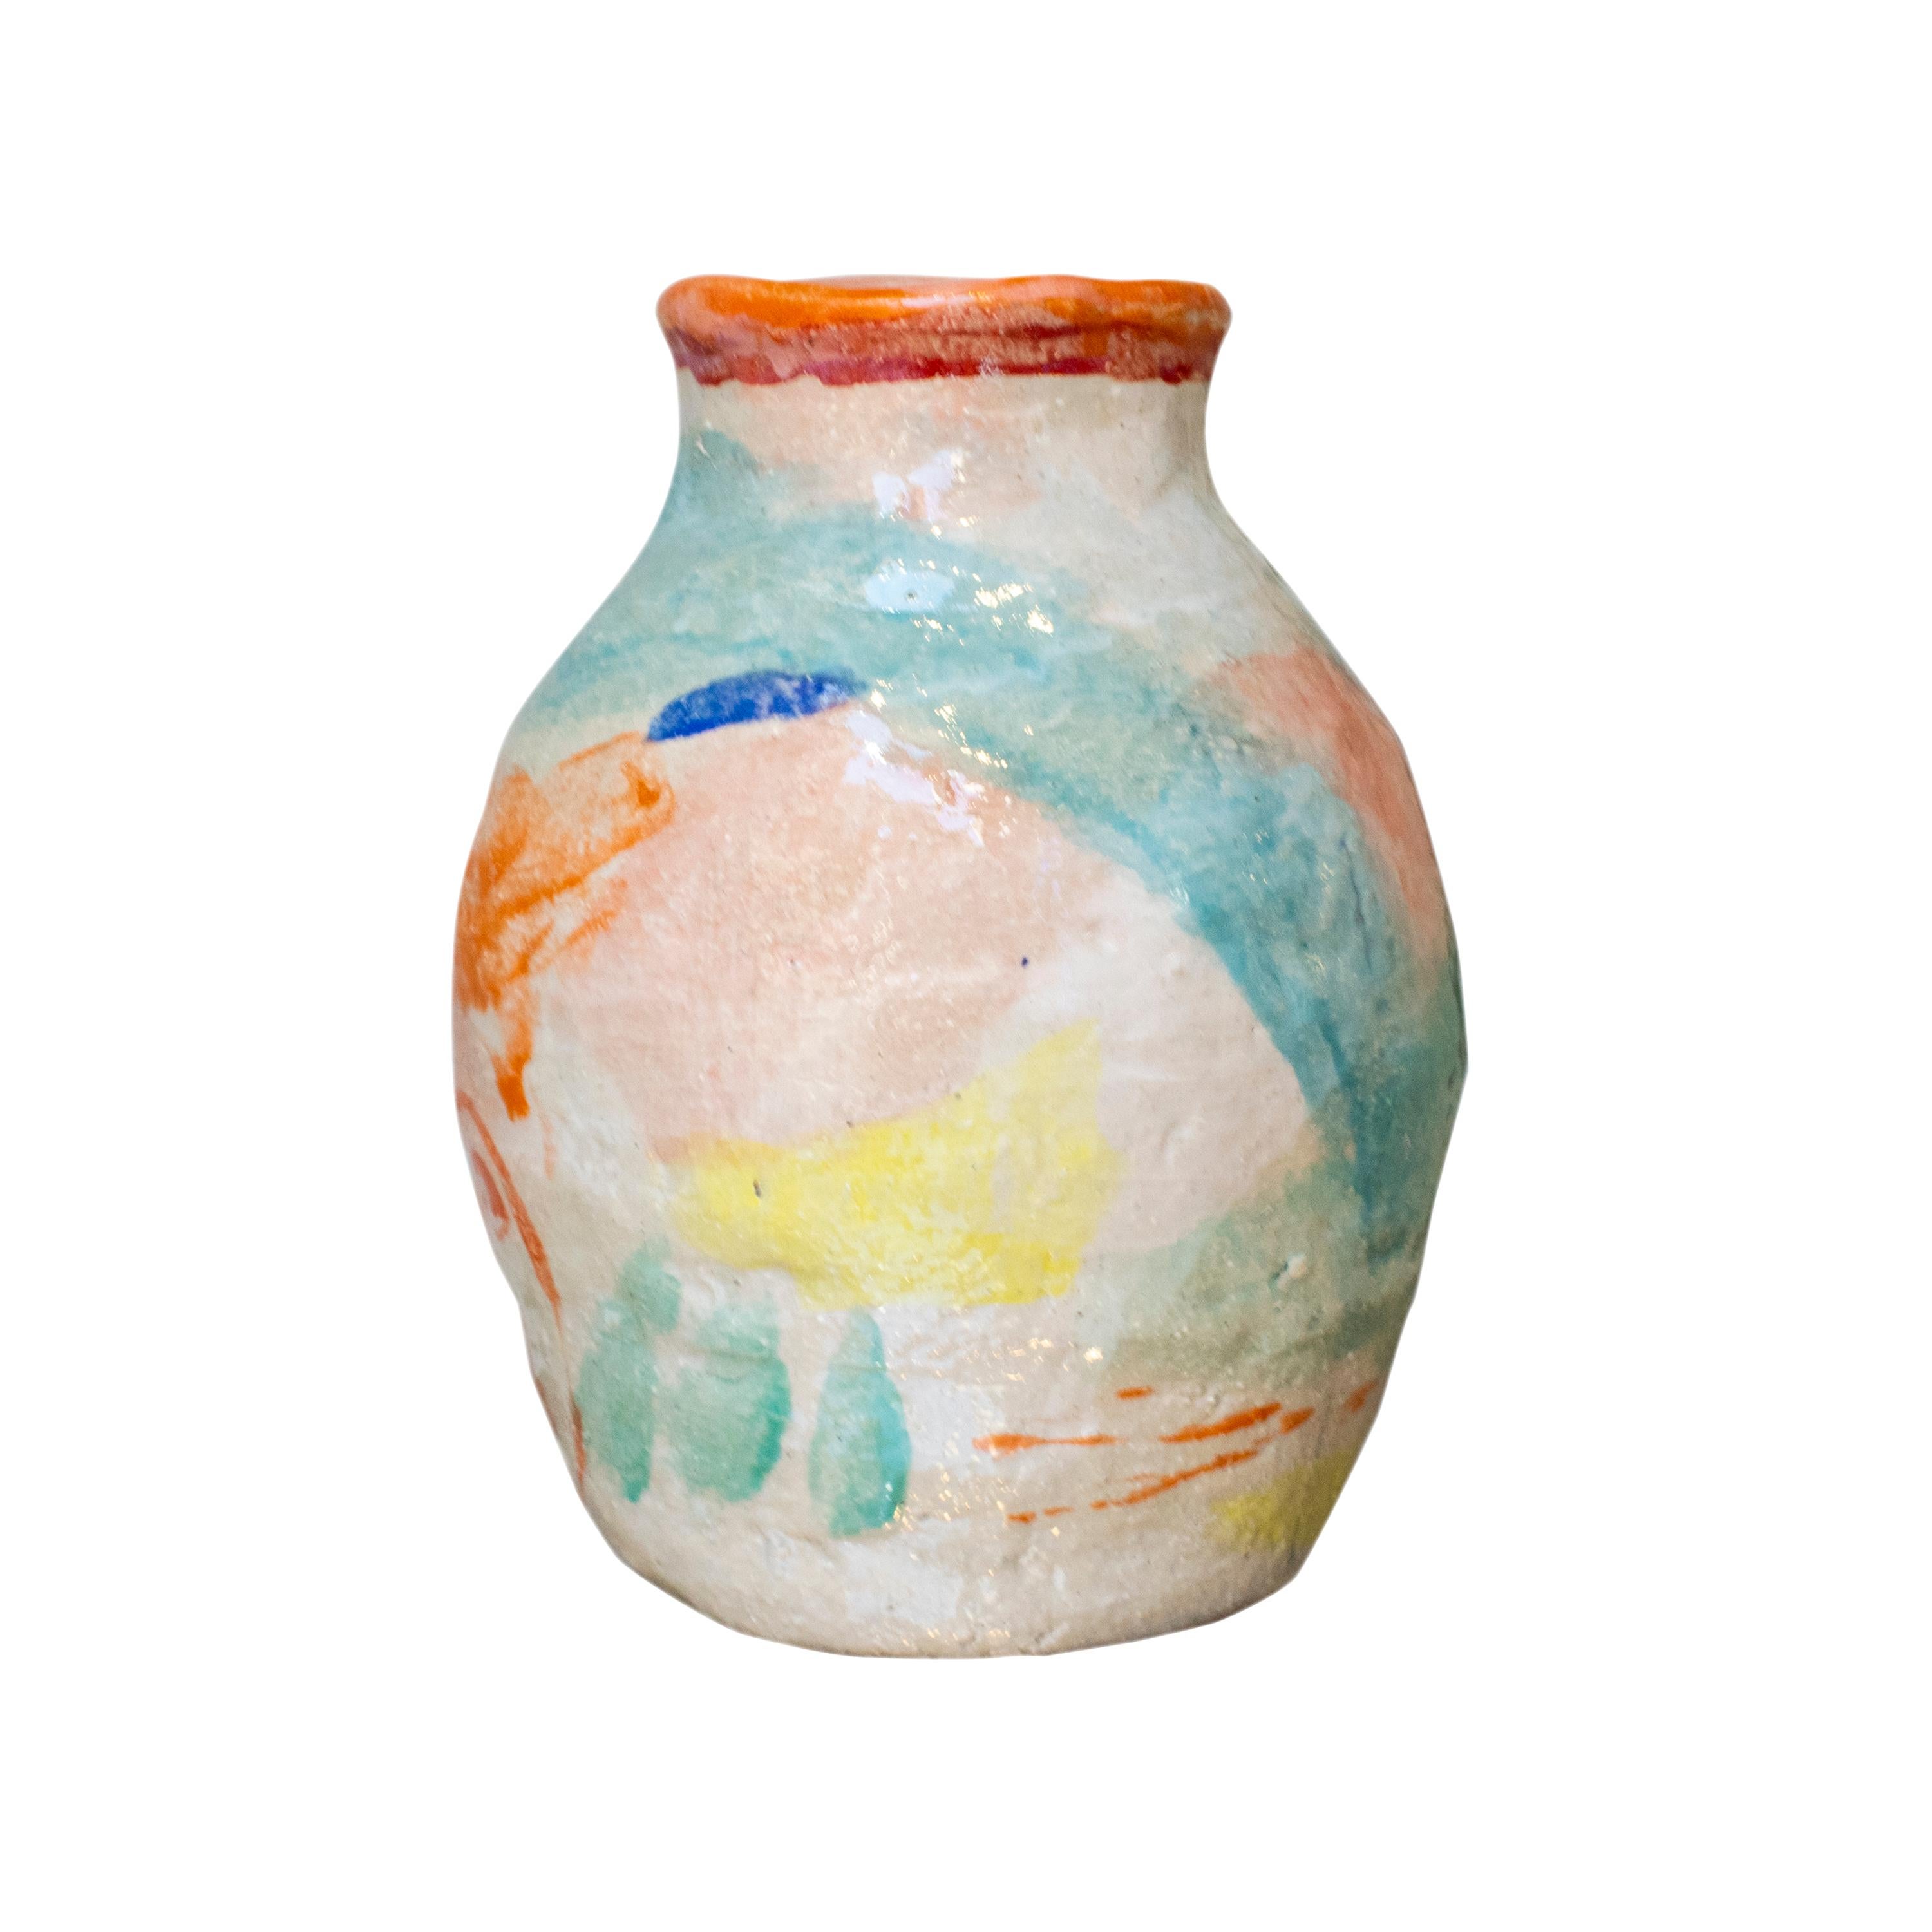 Handgefertigte und bemalte moderne Vase, entworfen von der spanischen Künstlerin Ana Laso.

ANA LASO BAEZA ist eine Künstlerin aus Madrid, die ihre Tätigkeit hauptsächlich als Malerin und seit einigen Jahren auch als Keramikerin ausübt. Ihre